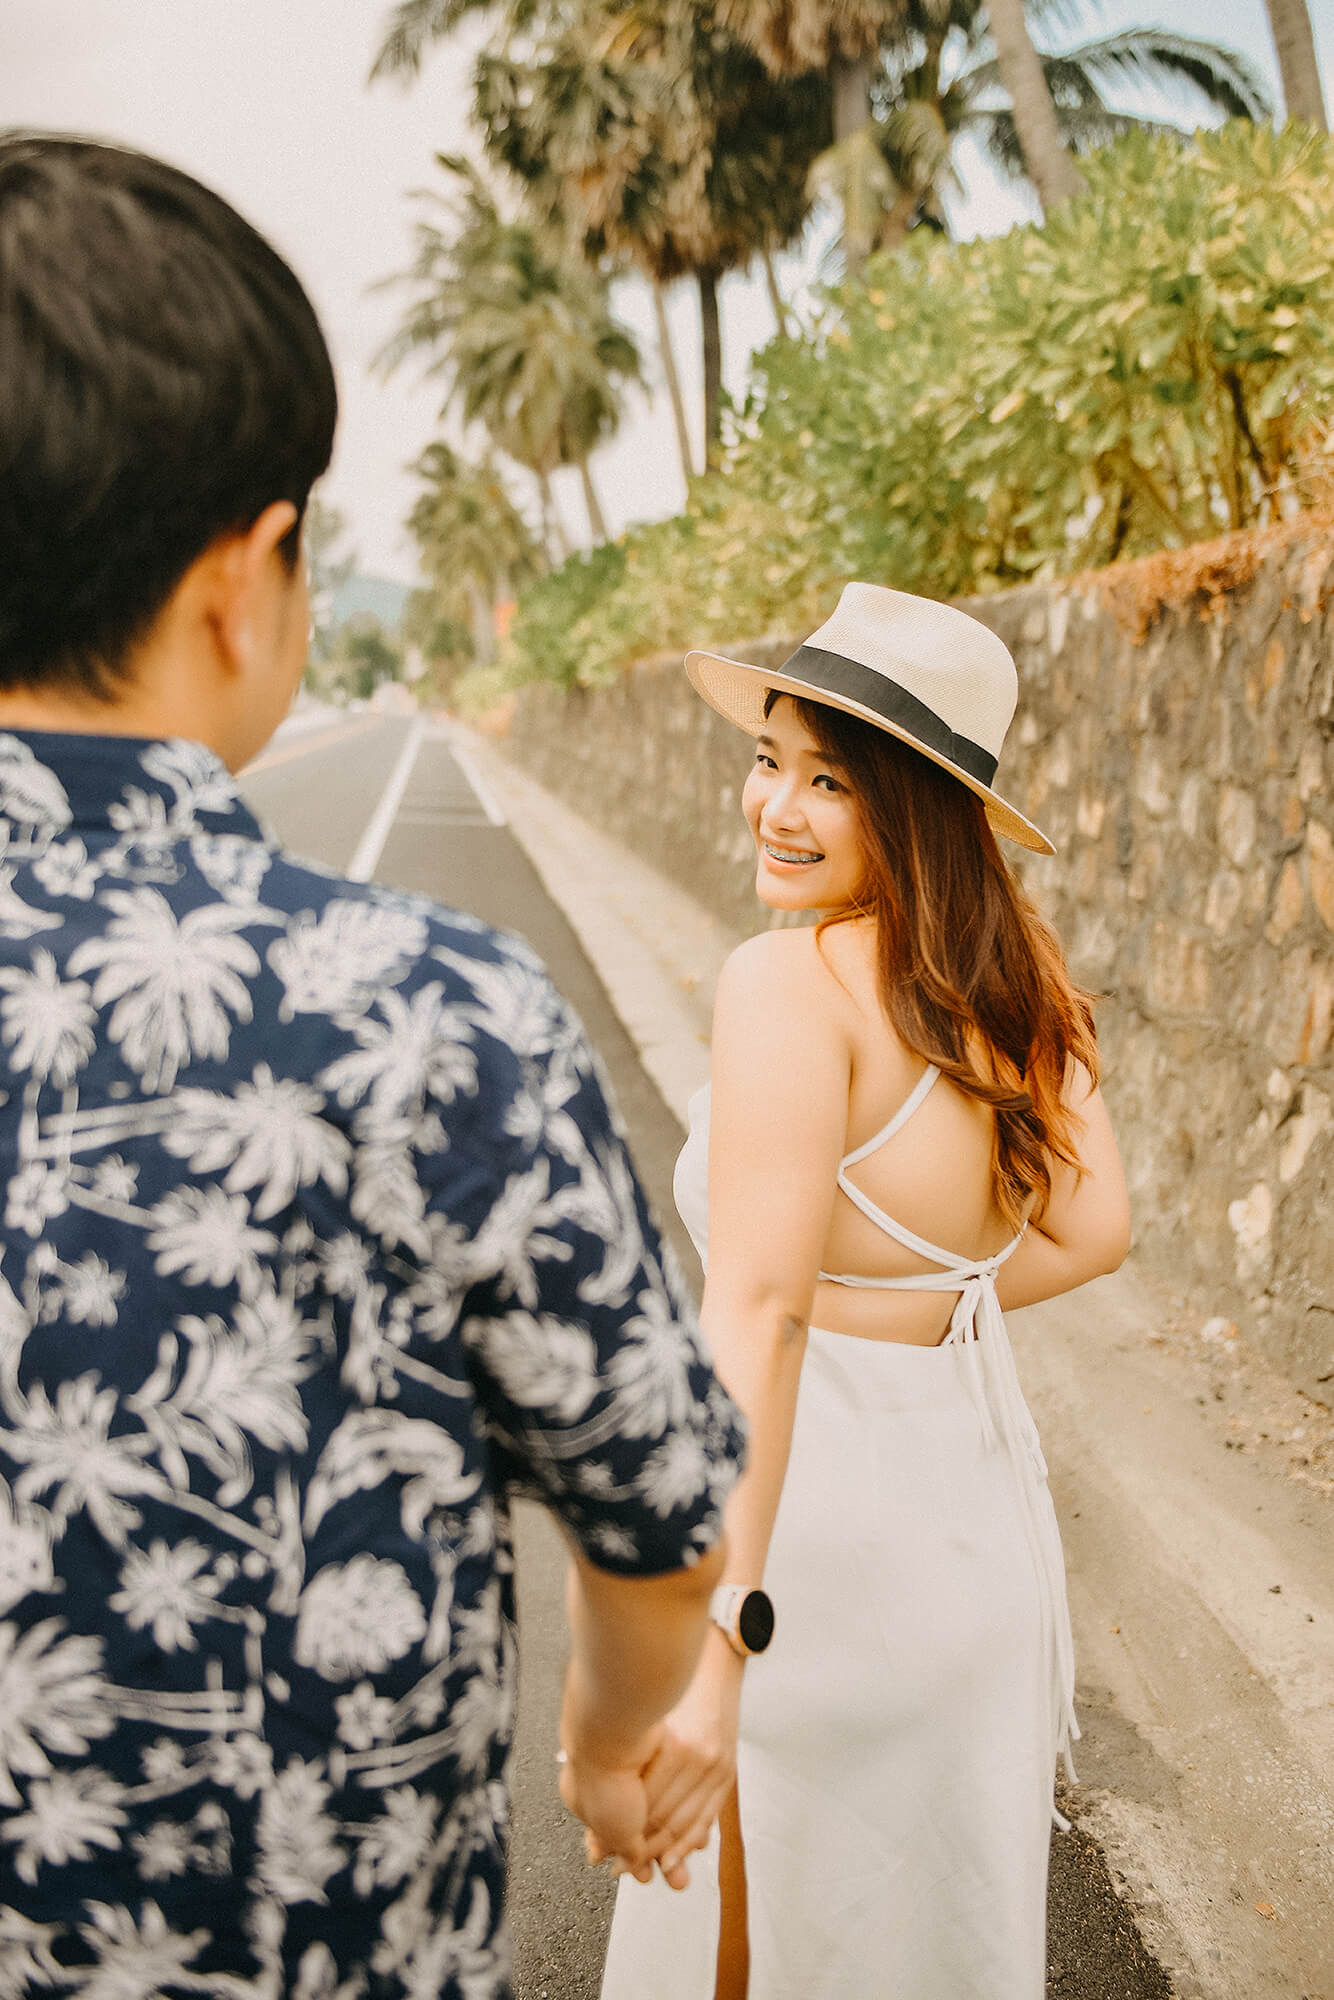 Couples Holiday Photoshoot in Phuket